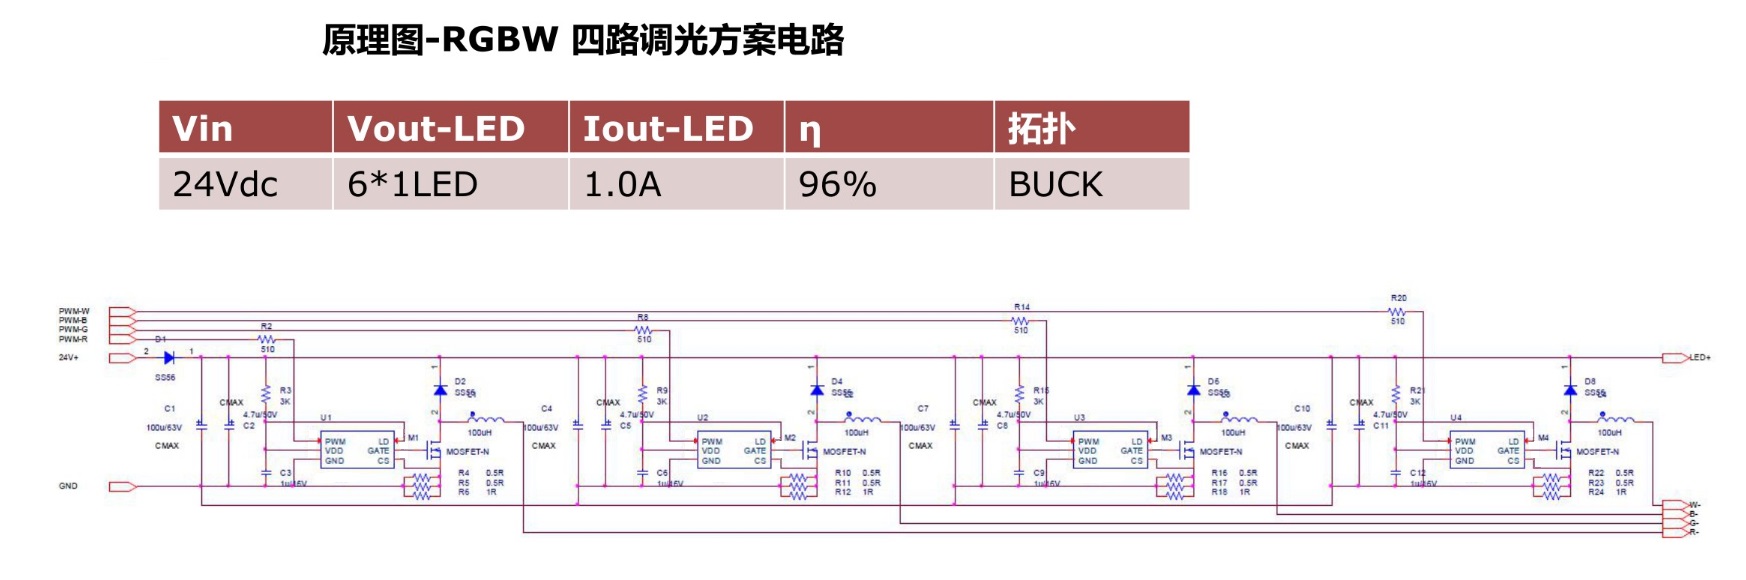 降压型LED恒流驱动芯片MH52xx系列介绍